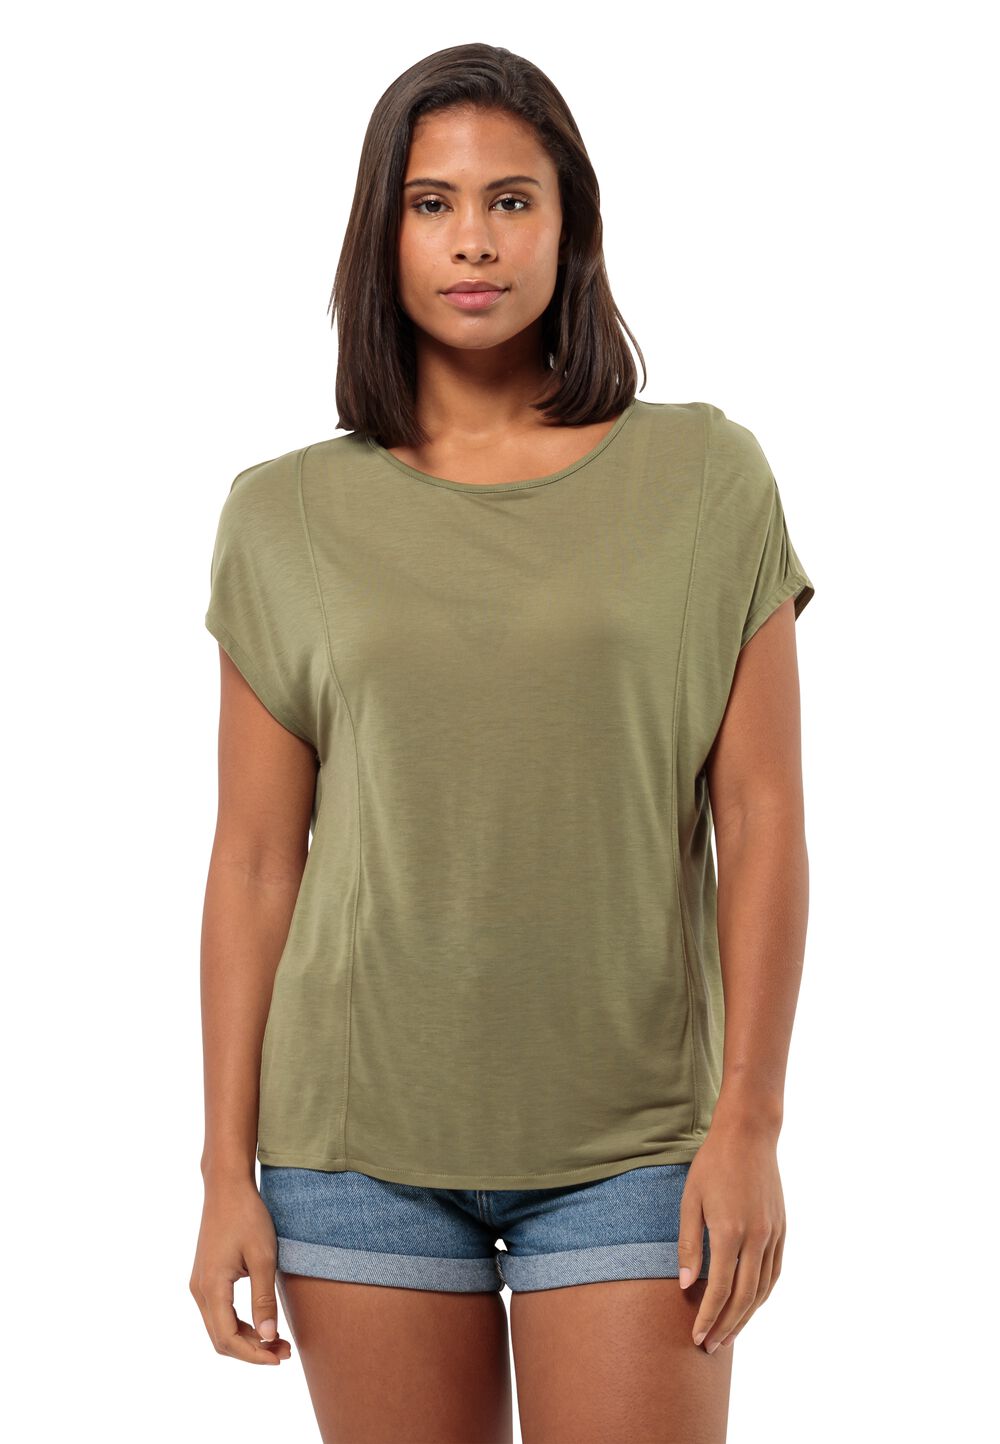 Jack Wolfskin Mola T-Shirt Women T-shirt Dames XXL bruin bay leaf